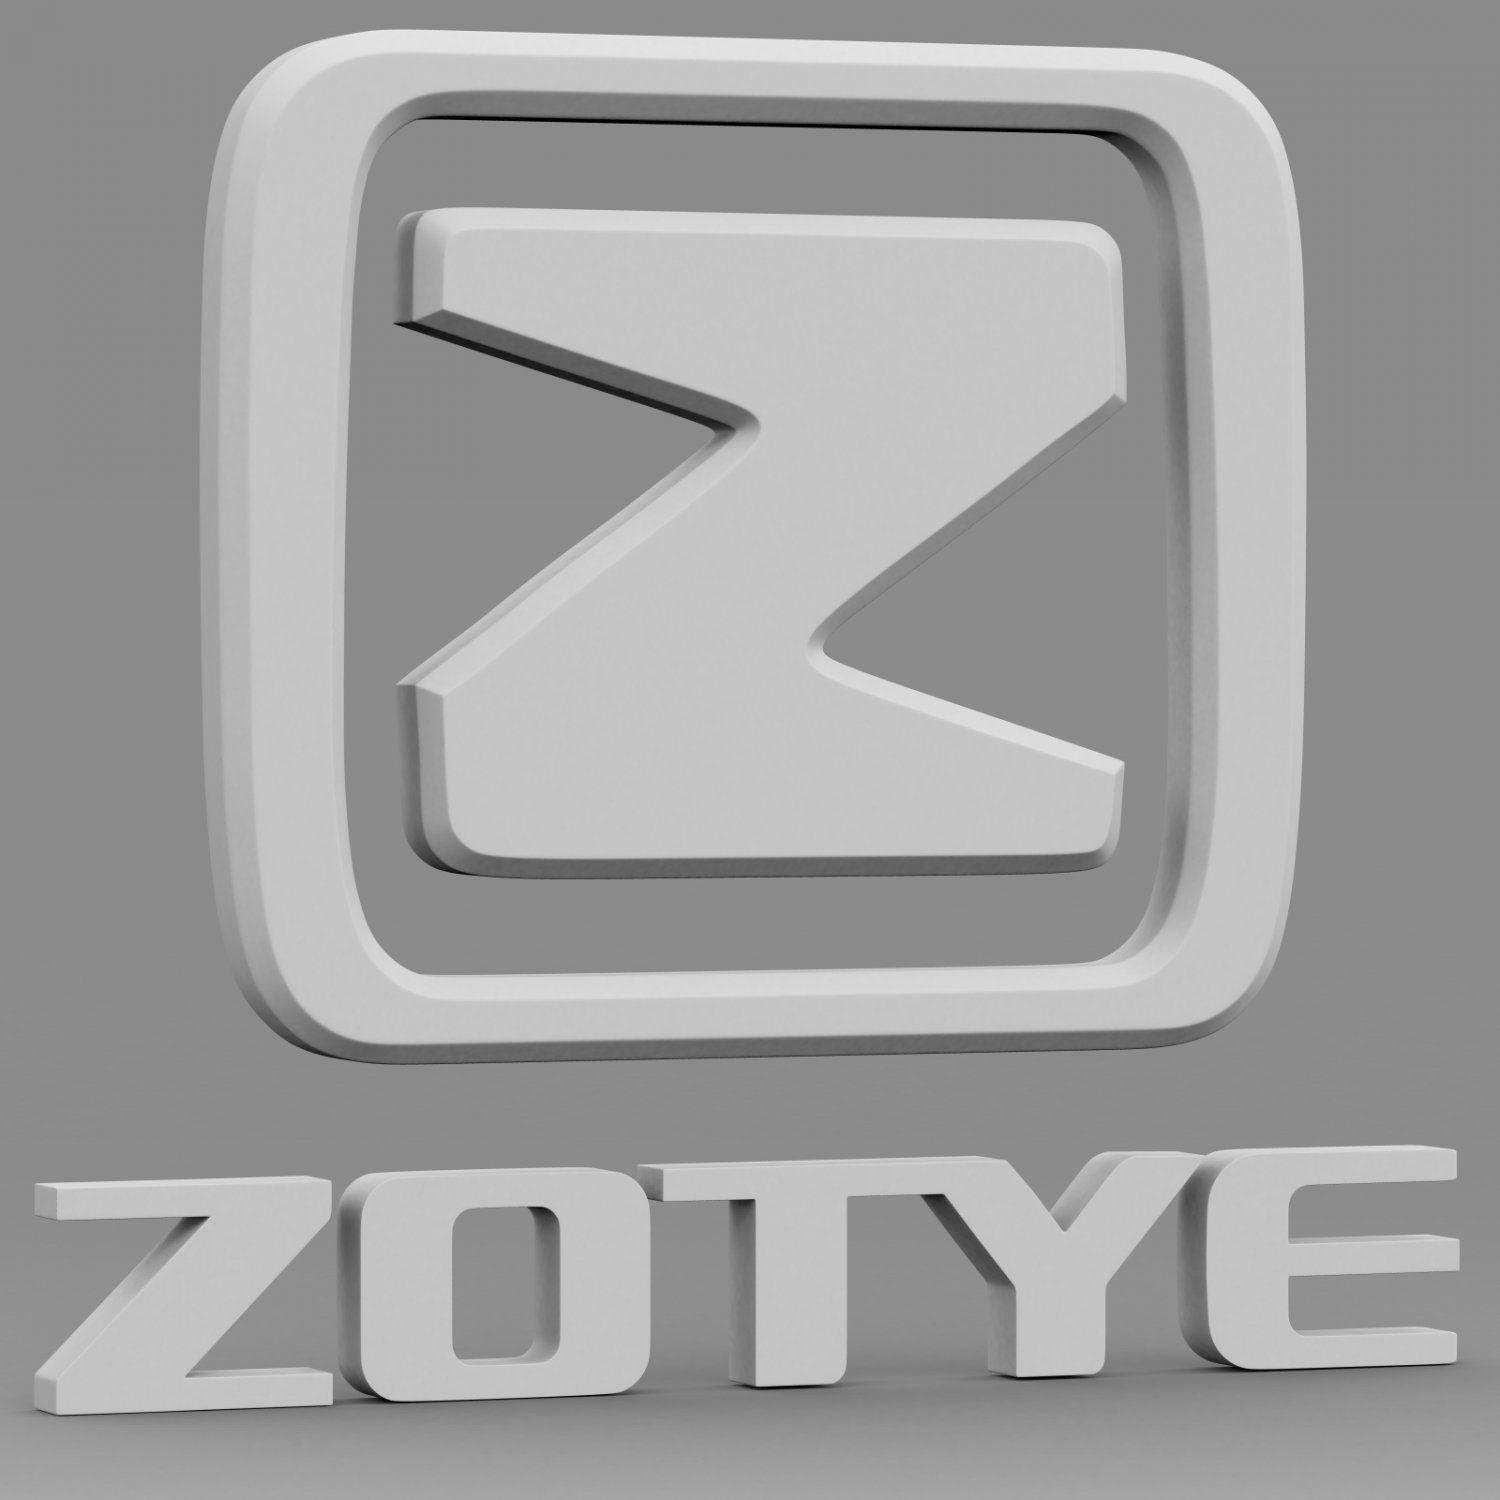 Zotye Logo - Zotye logo 3D Model in Parts of auto 3DExport